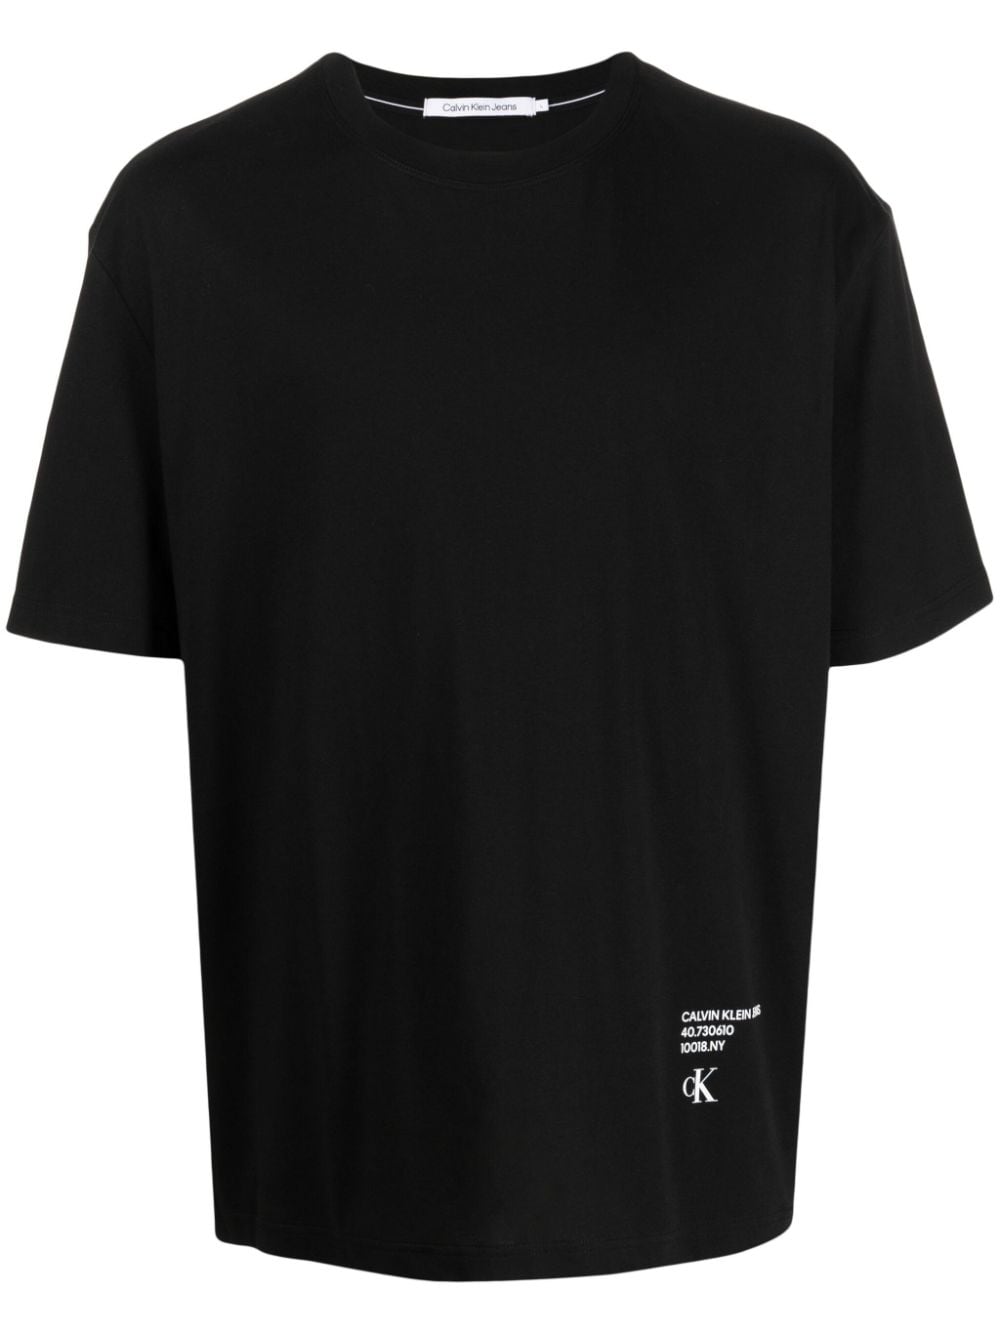 Calvin Klein Stacked Modern Metals Cotton T-shirt In Black